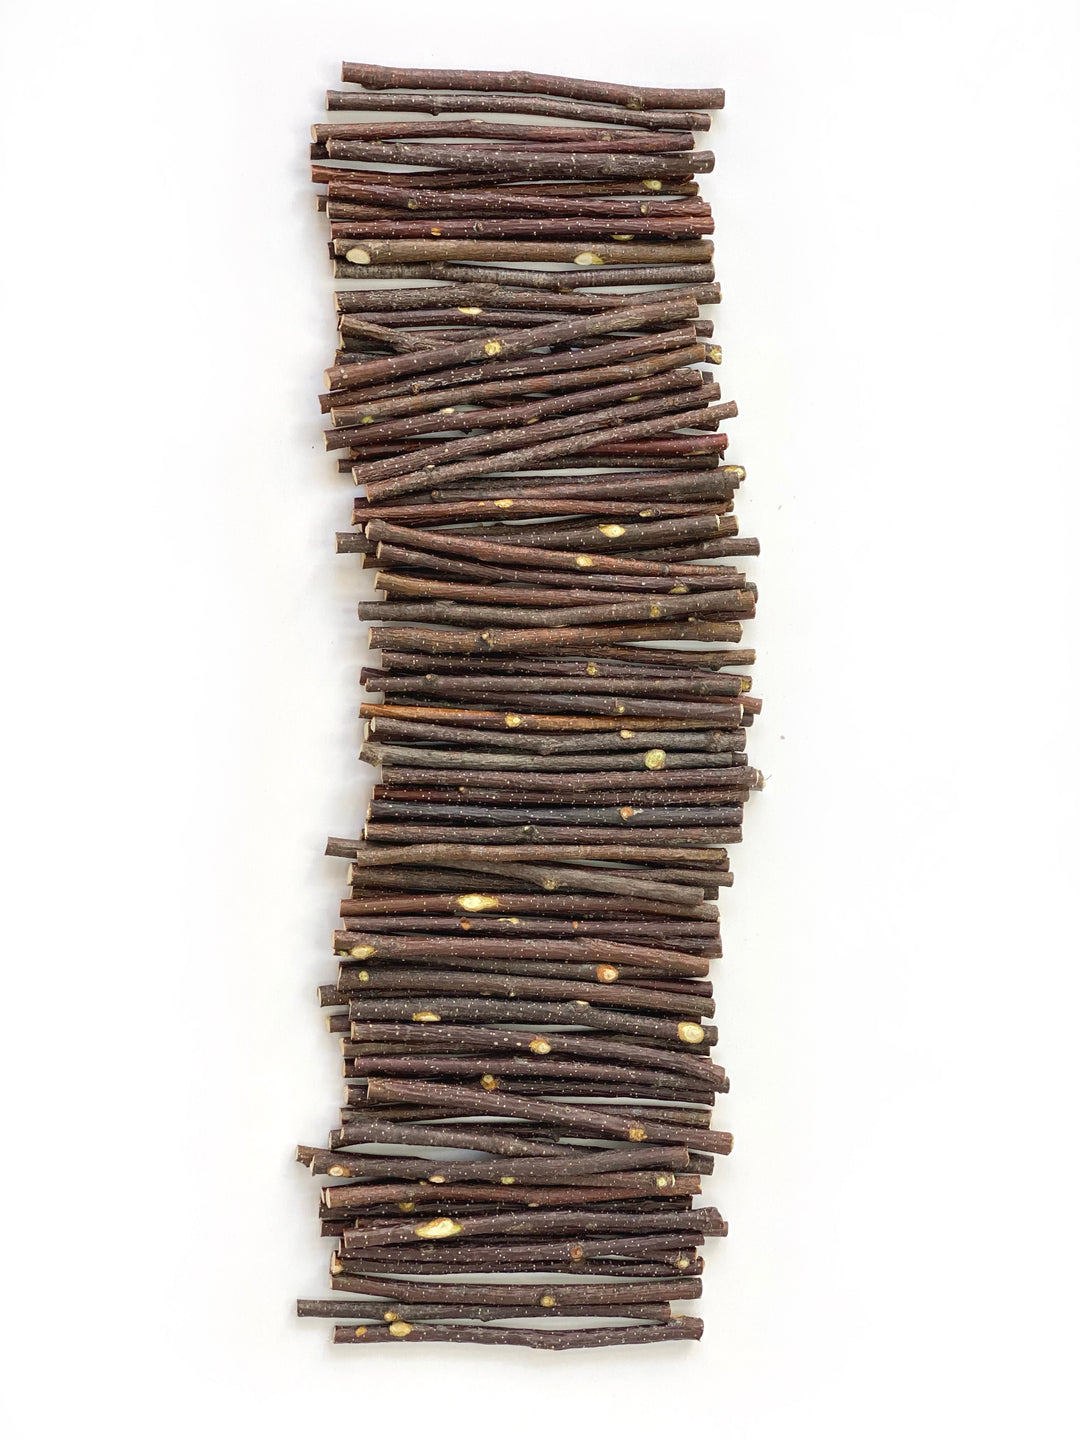 100PCS Wood Craft Sticks Natural Wood For DIY Craft Creative